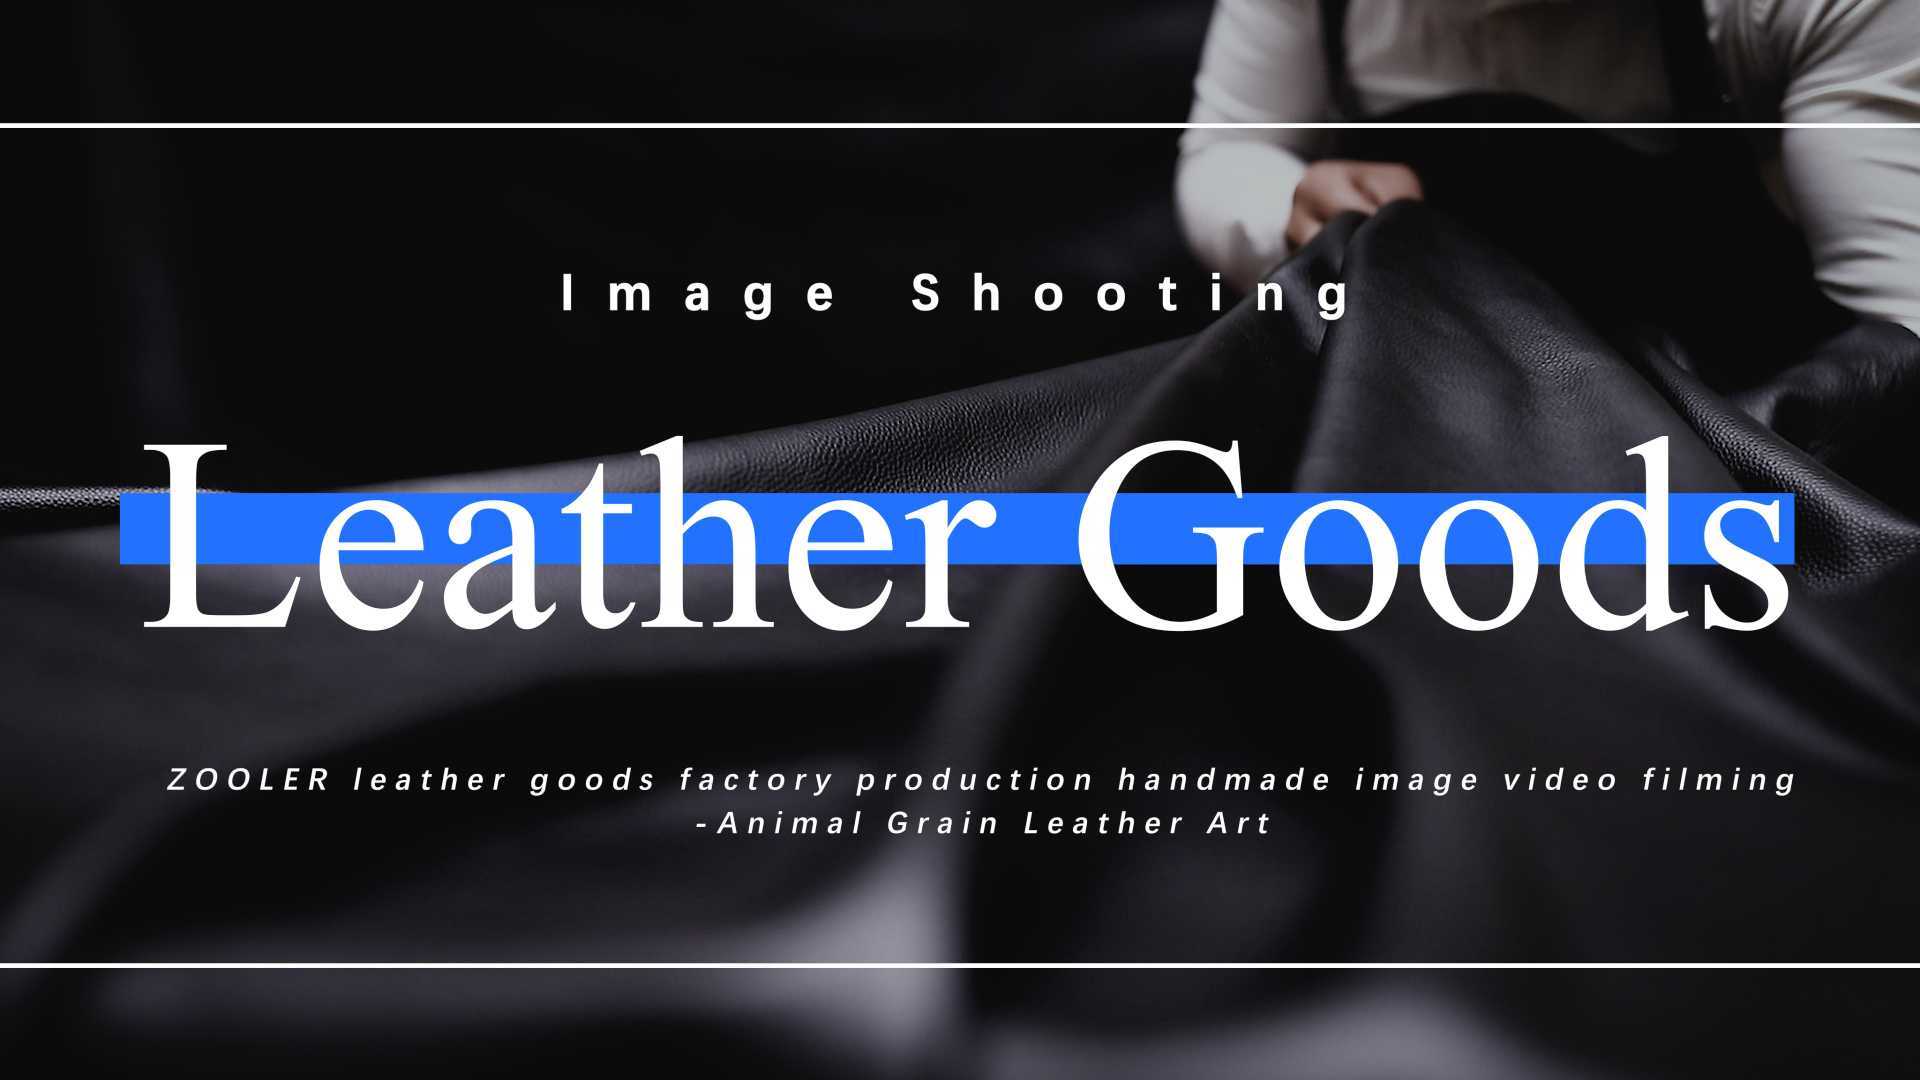 皮具形象视频摄制 | Leather Image Photography